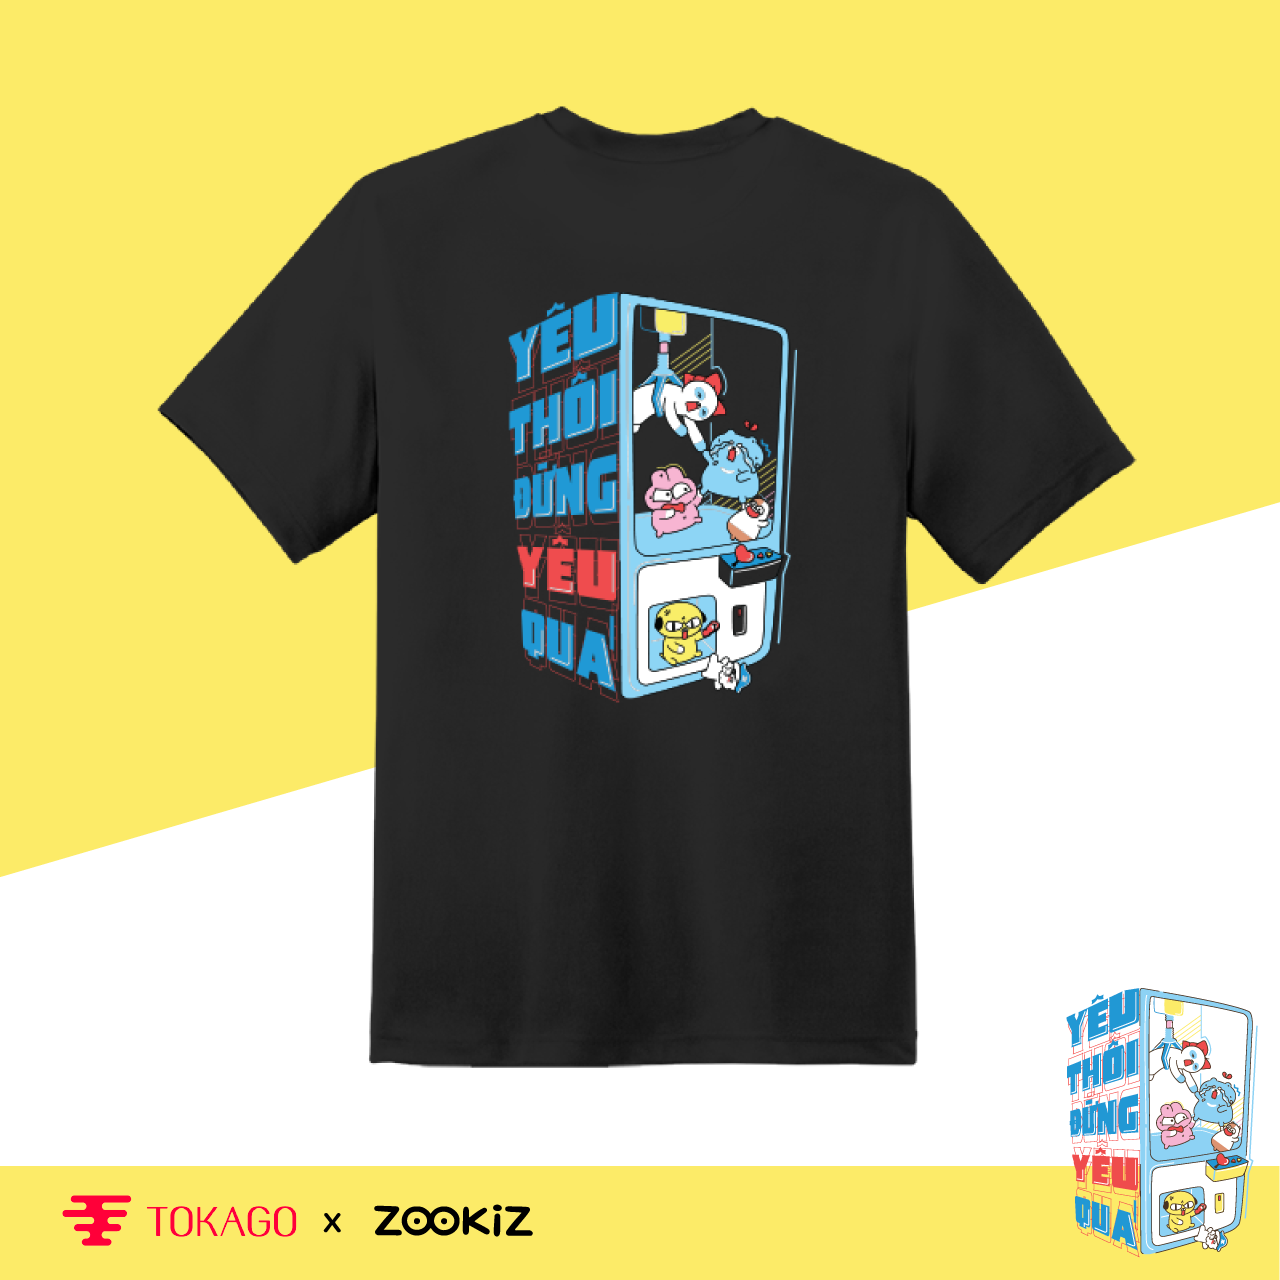 Áo T-shirt  ZOOKiZ  - Mẫu  Yêu thôi đừng yêu quá